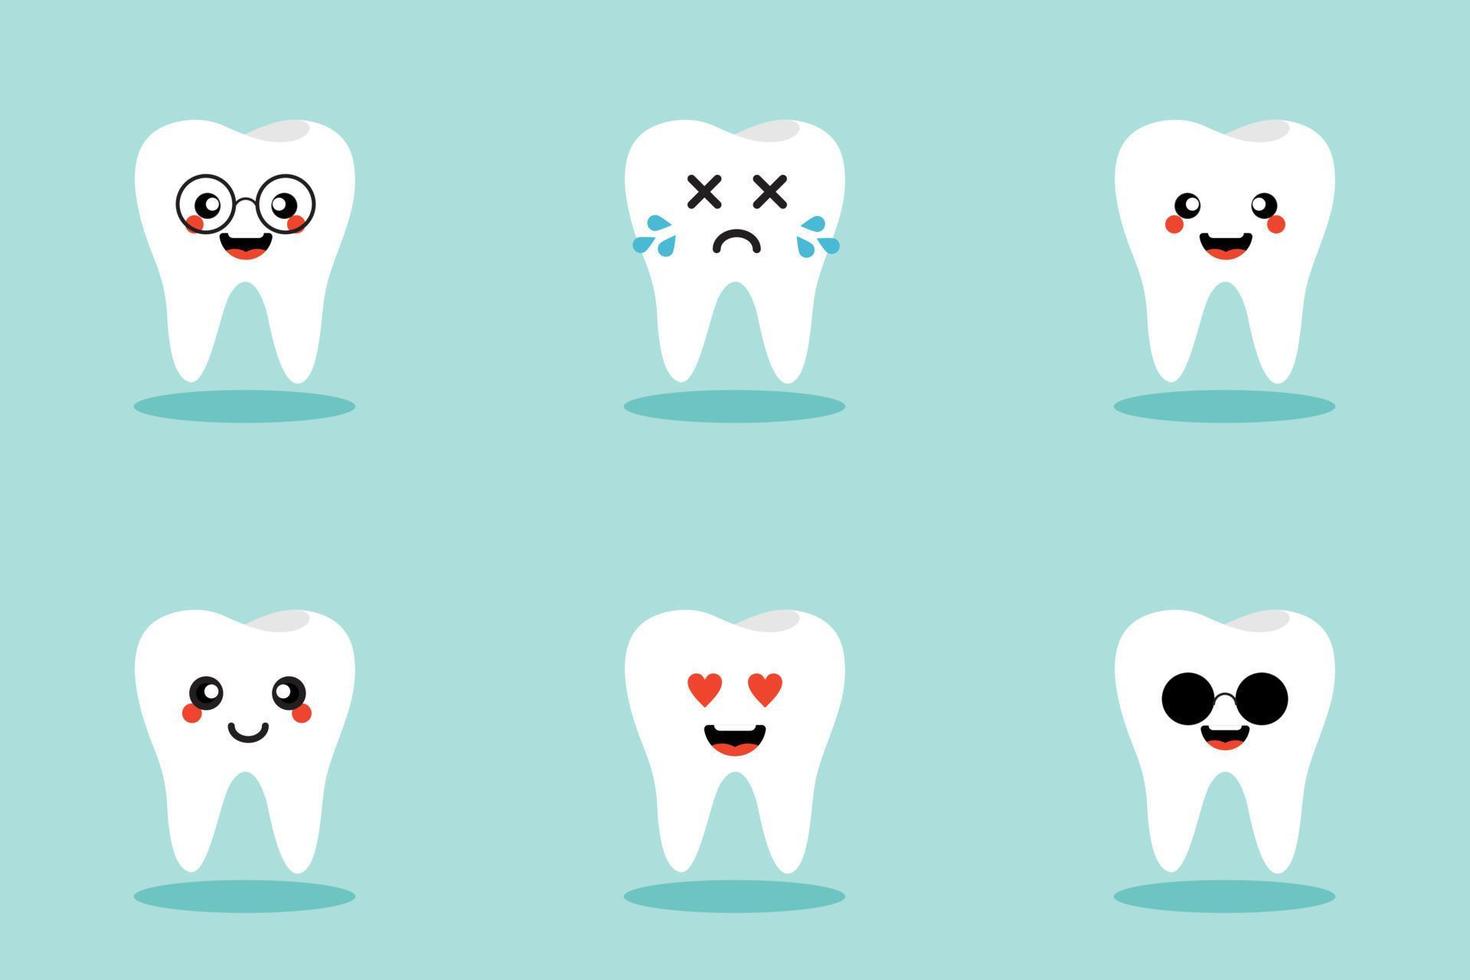 Set aus süßen Zahn-Emojis und Emoticons mit unterschiedlichen Gesichtsausdrücken. gesunde weiße niedliche zeichentrickzahnfiguren mit unterschiedlichen gesichtsausdrücken. Mundhygiene-Emoticons. vektor